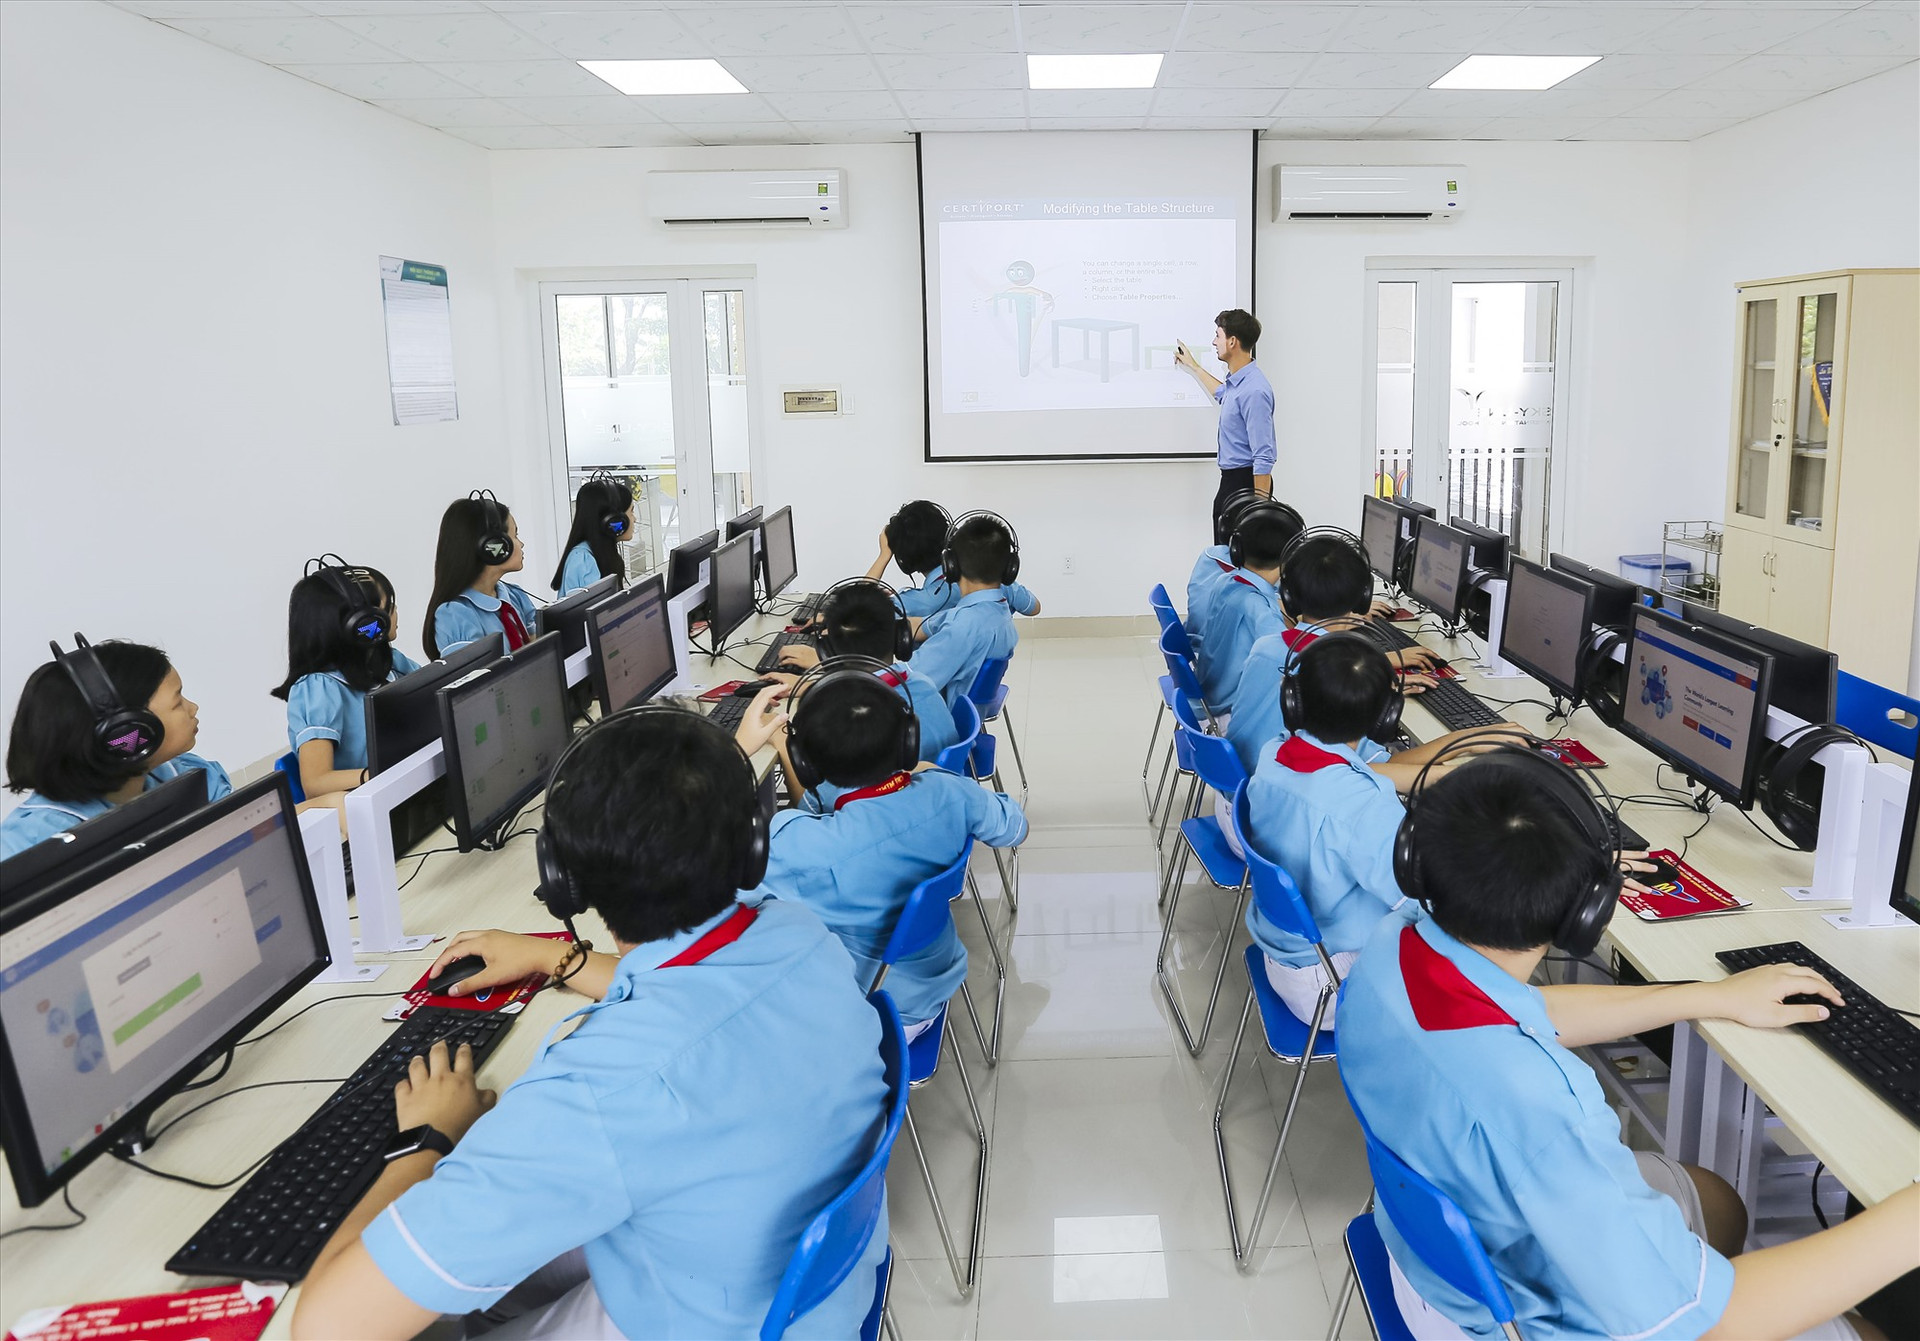 Hệ thống giáo dục Sky-Line với cơ sở vật chất, phương tiện hiện đại là môi trường học tập và rèn luyện lý tưởng cho học sinh từ mầm non đến THPT. Ảnh: Sky-Line cung cấp